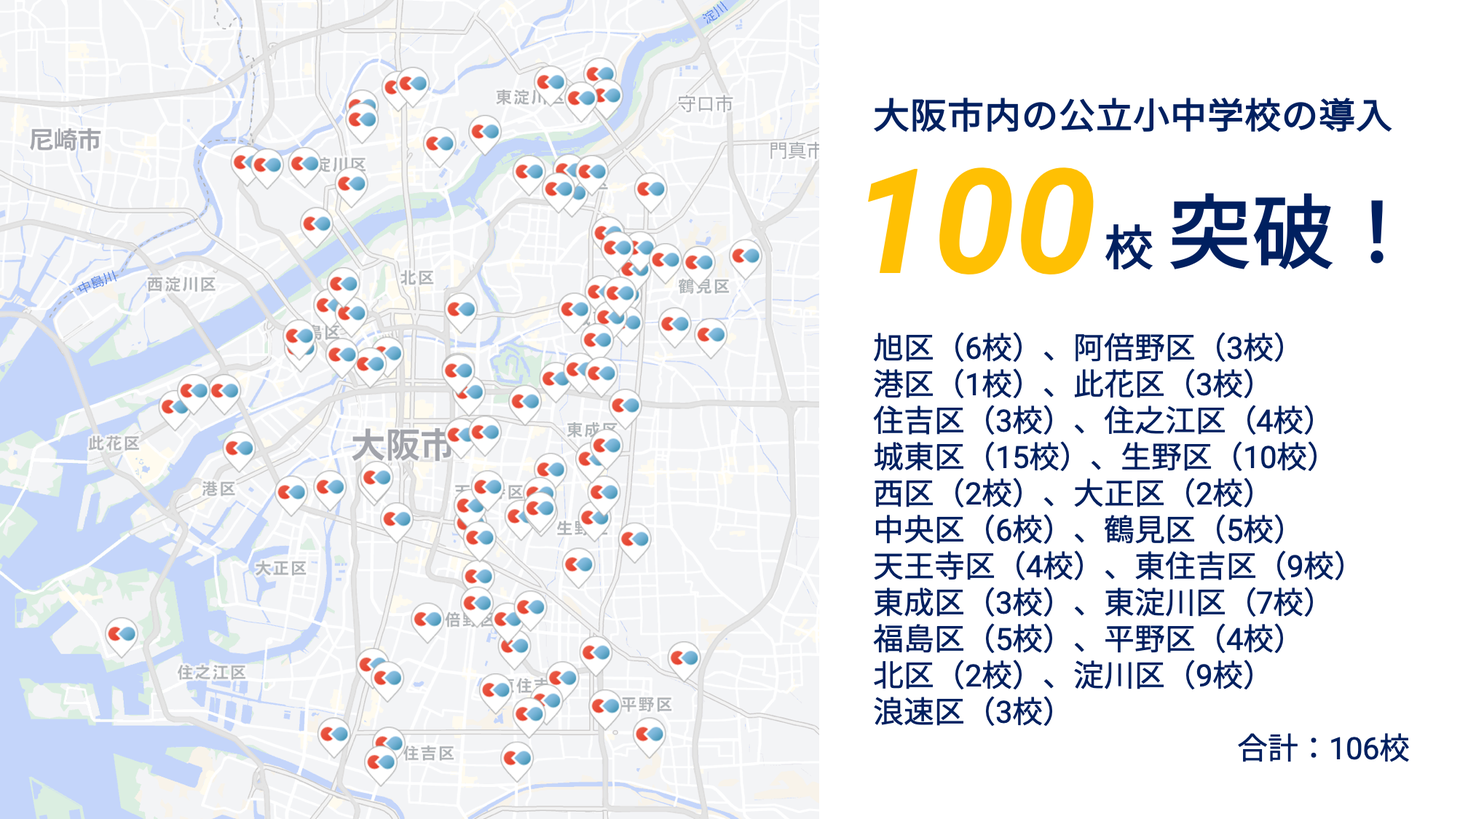 健康観察アプリ「LEBER for School」、大阪市内の公立小中学校100校を突破